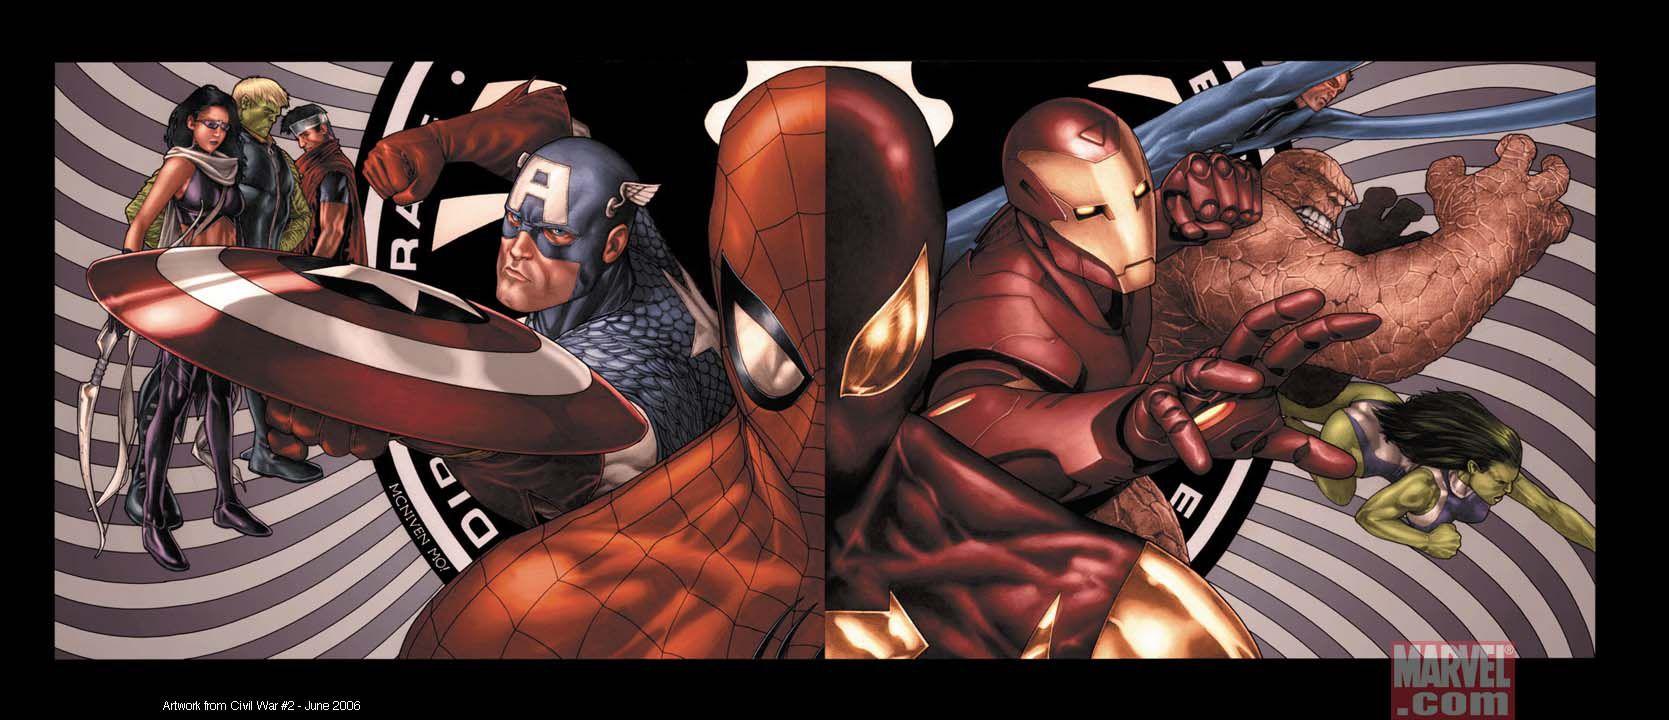 Spider Man May Meet Marvel. Marvel Movie Magic